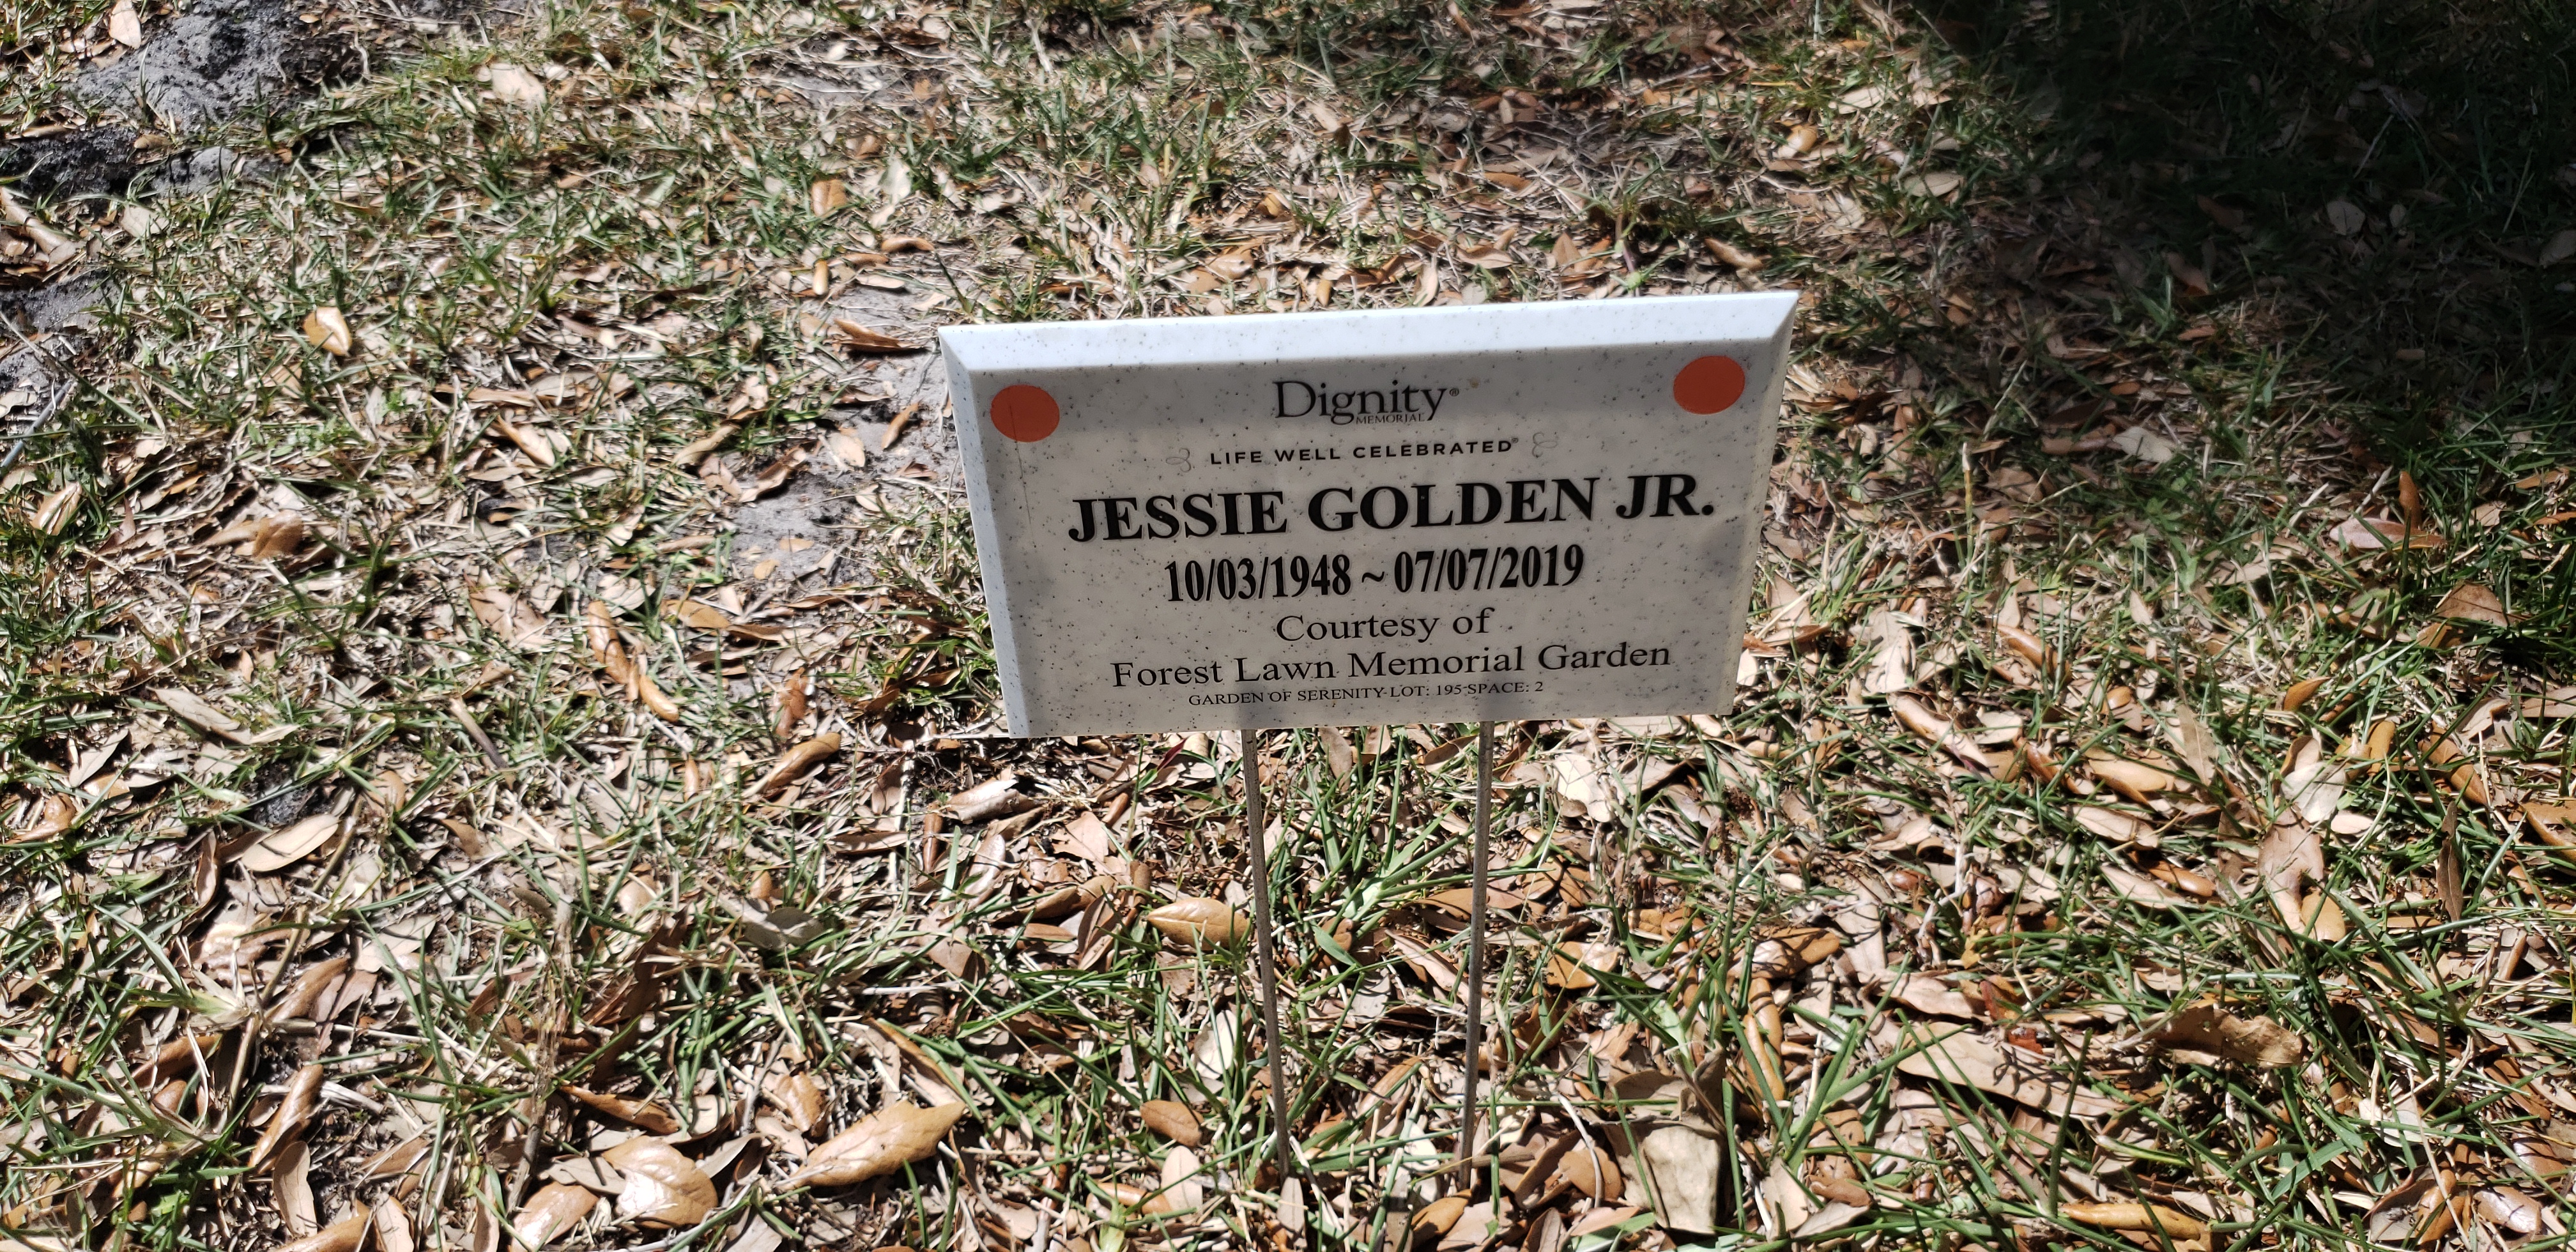 Jessie Golden, Jr